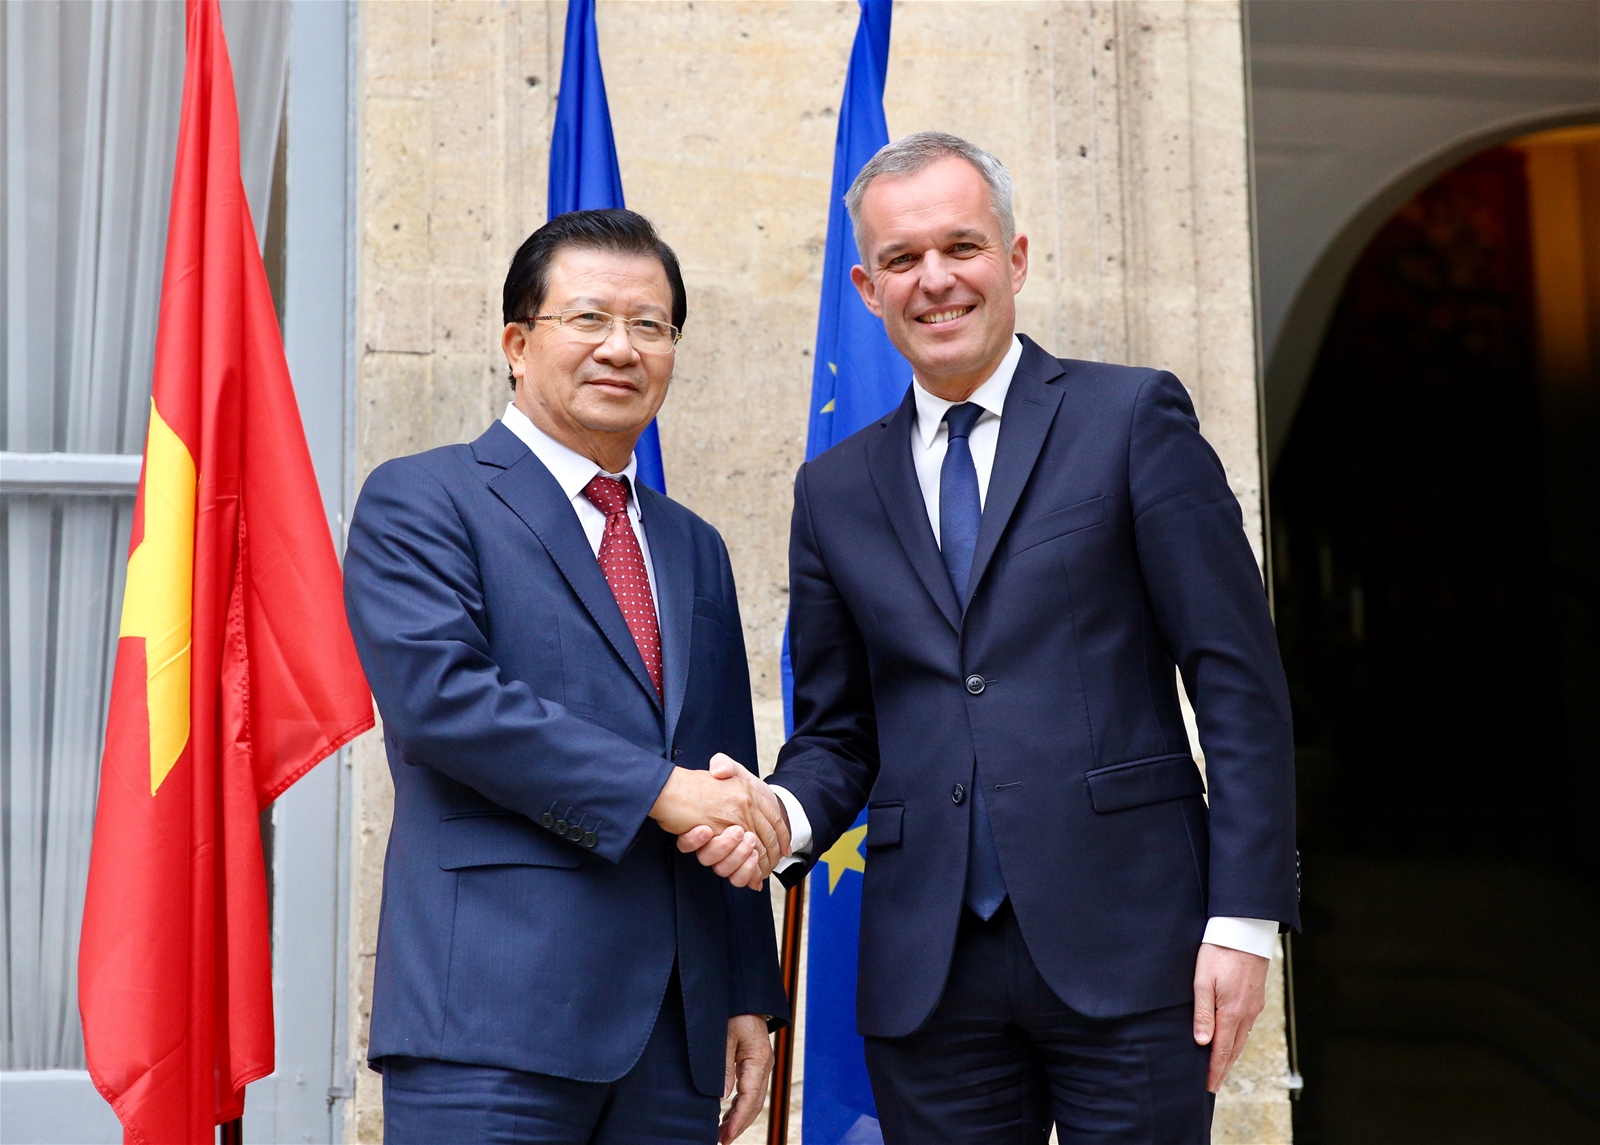 Hợp tác kinh tế - thương mại đầu tư là trụ cột trong quan hệ Việt - Pháp